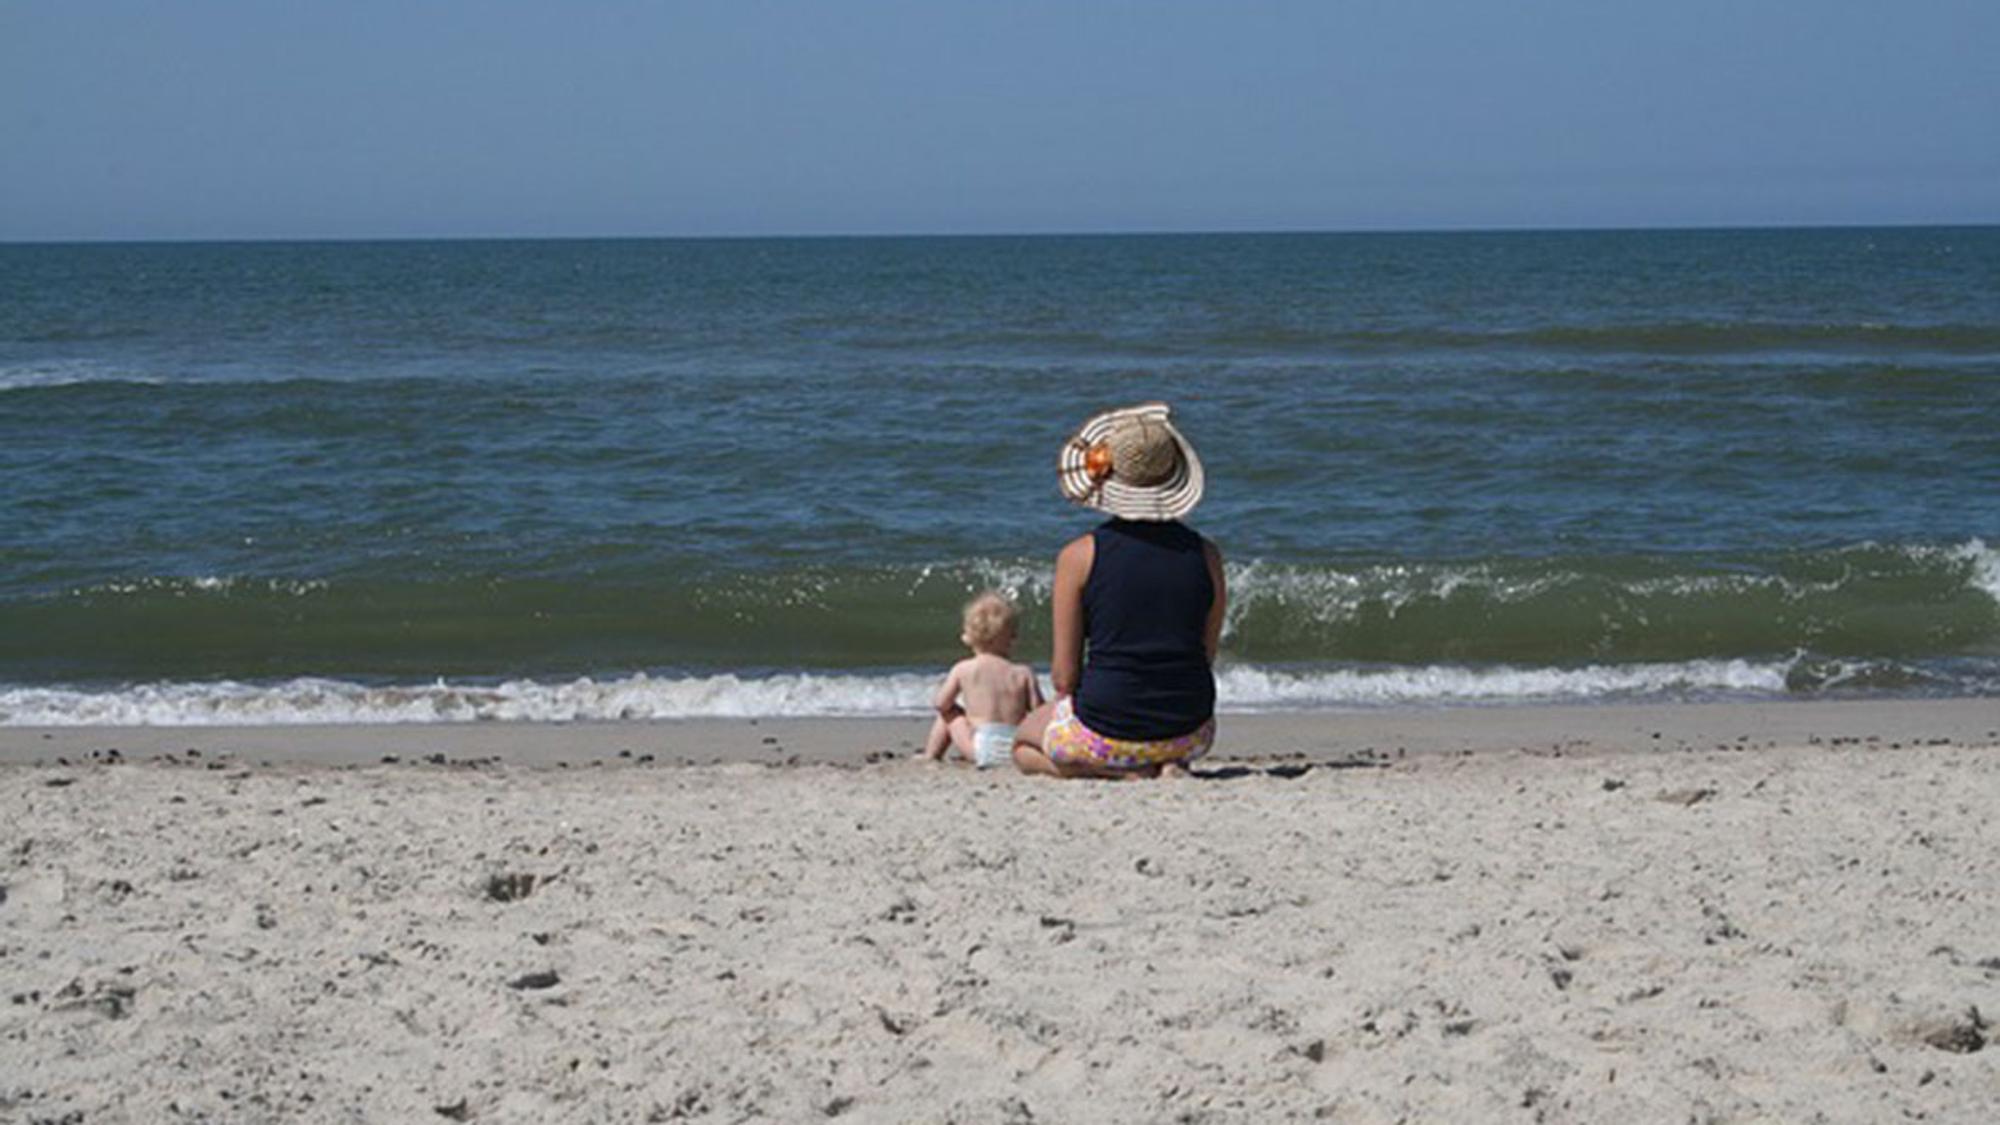 Dänemarks Strände sind ein beliebtes Familienziel während der Sommermonate.